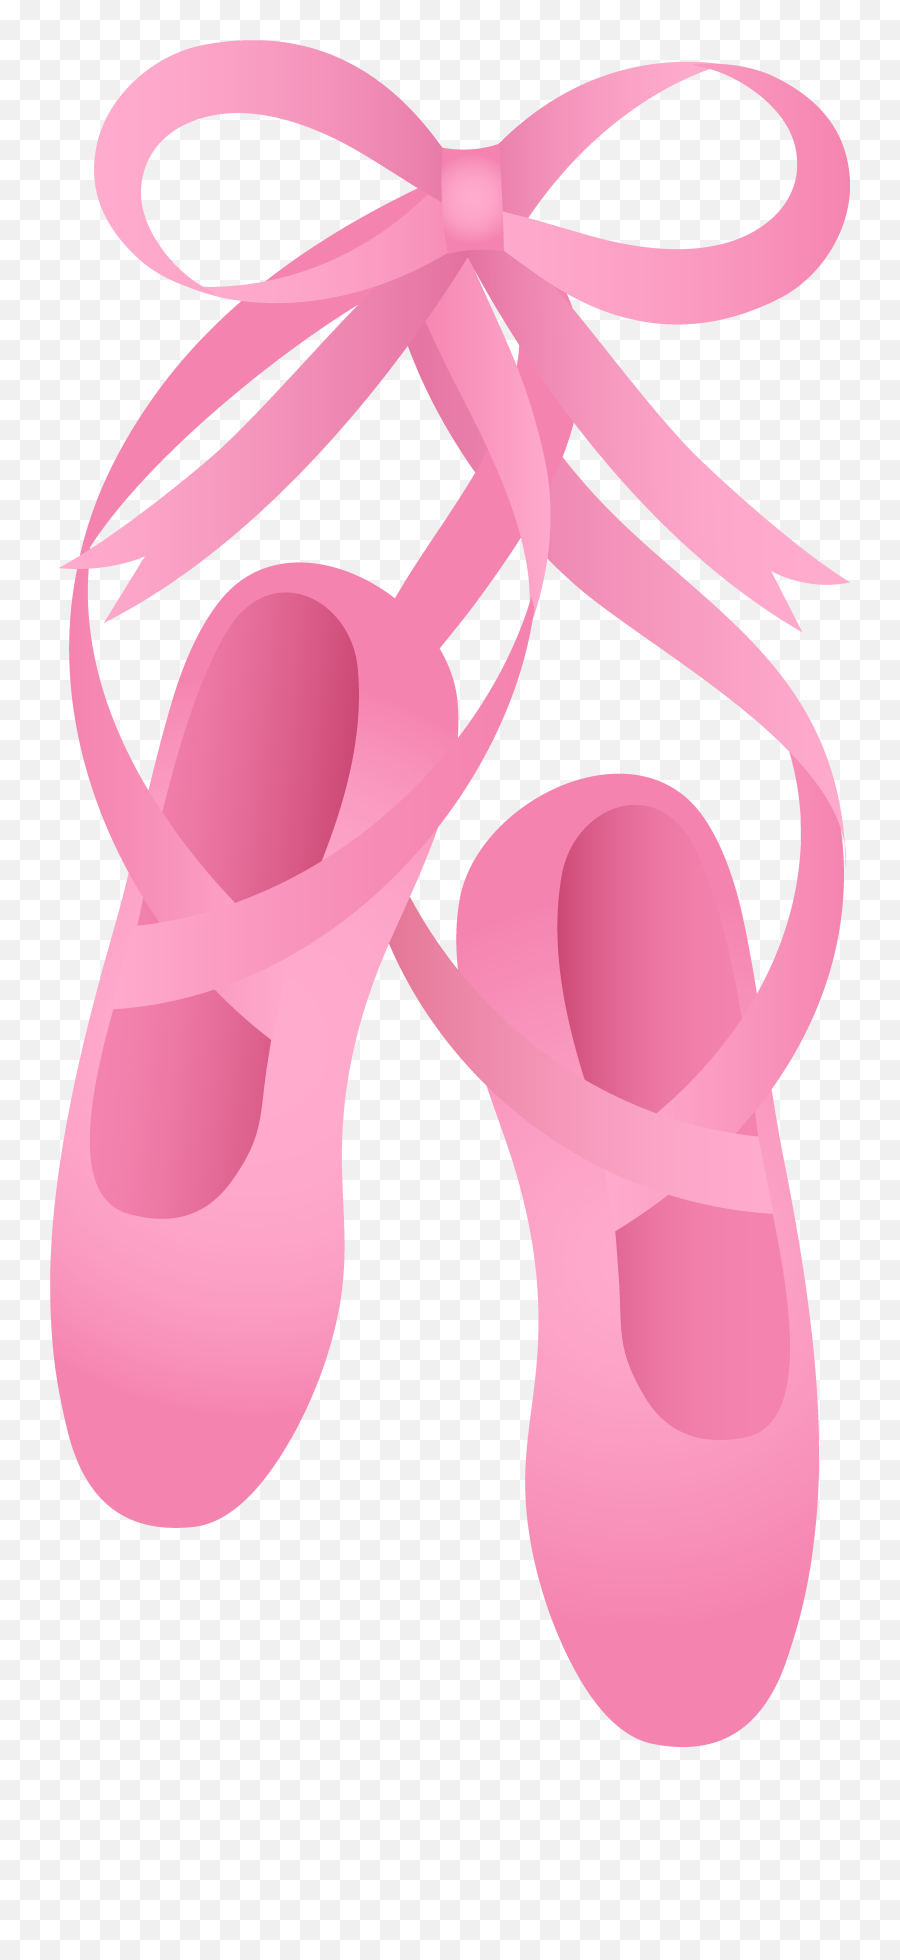 Download Hd Ballet Shoes Clipart Transparent Png Image - Ballet Clip Art Emoji,Shoes Clipart